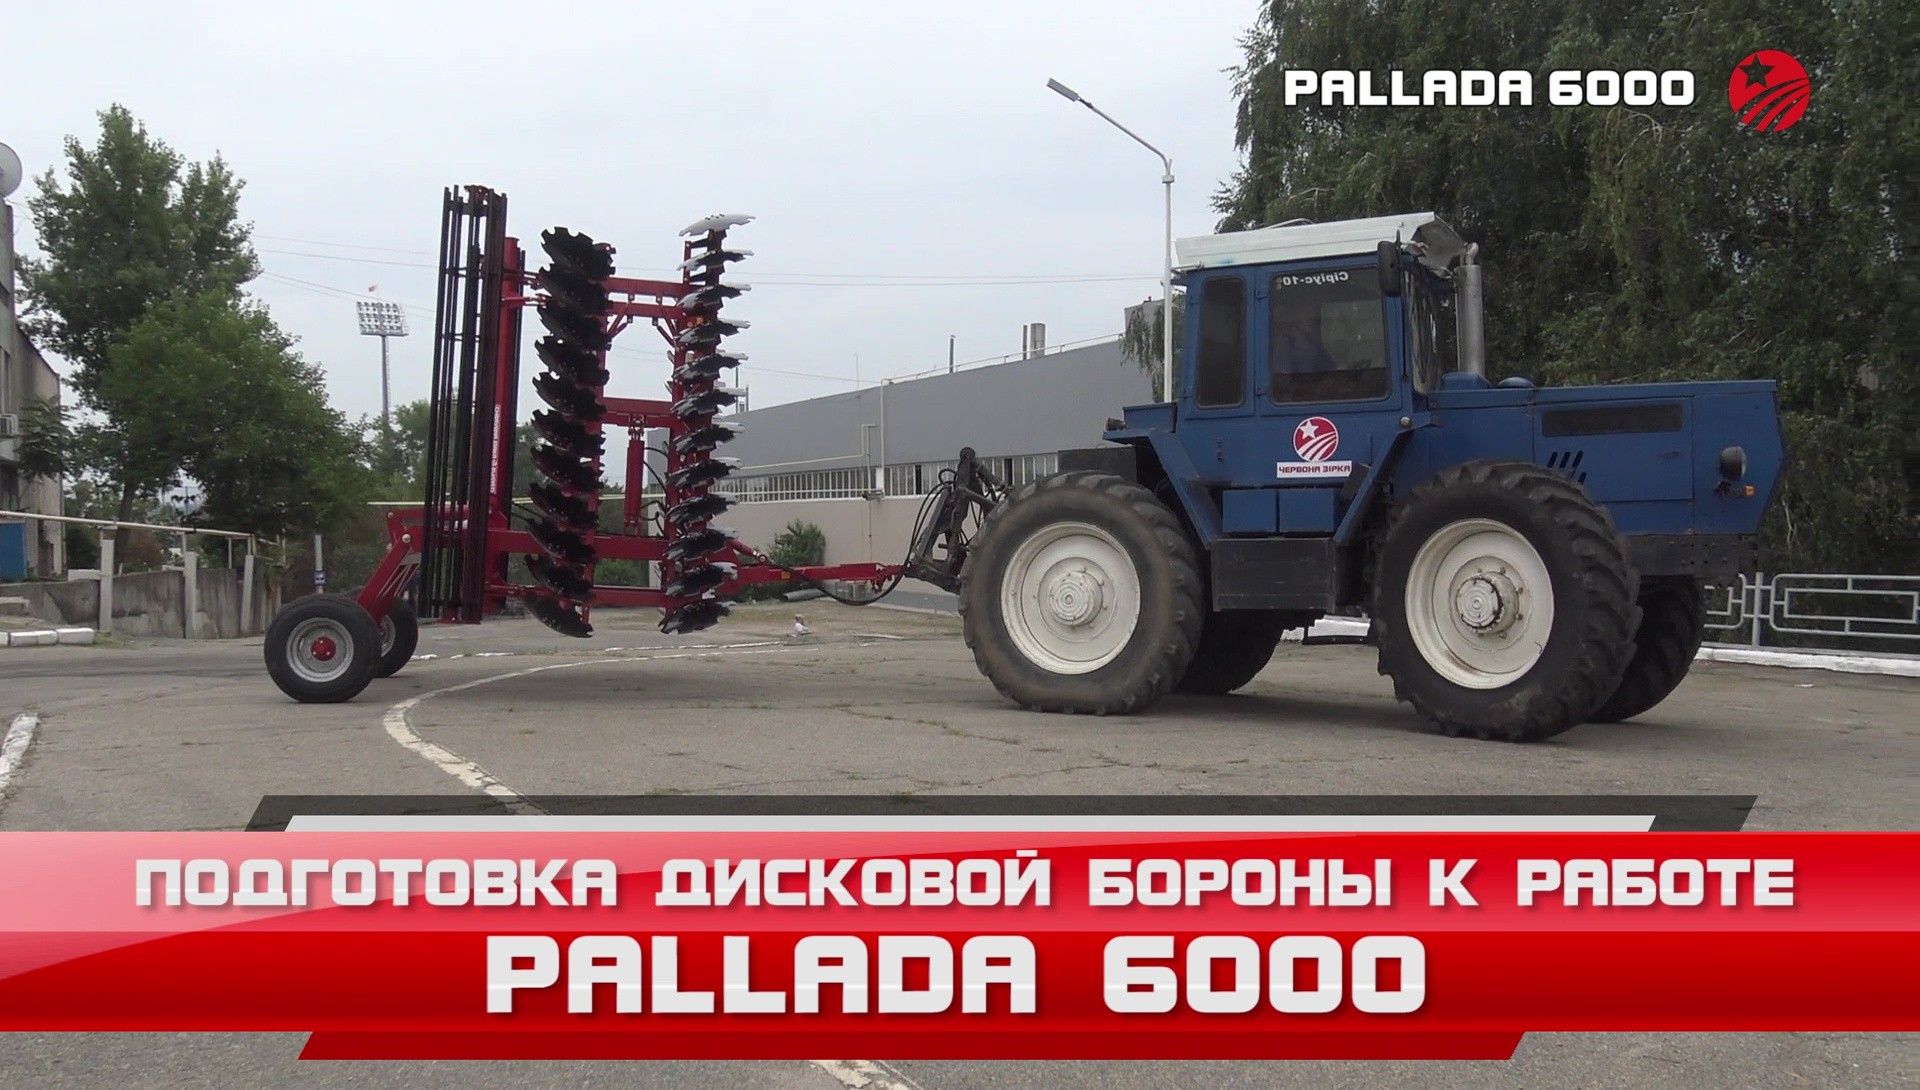 Pallada 6000 - Основные настройки и подготовка к работе